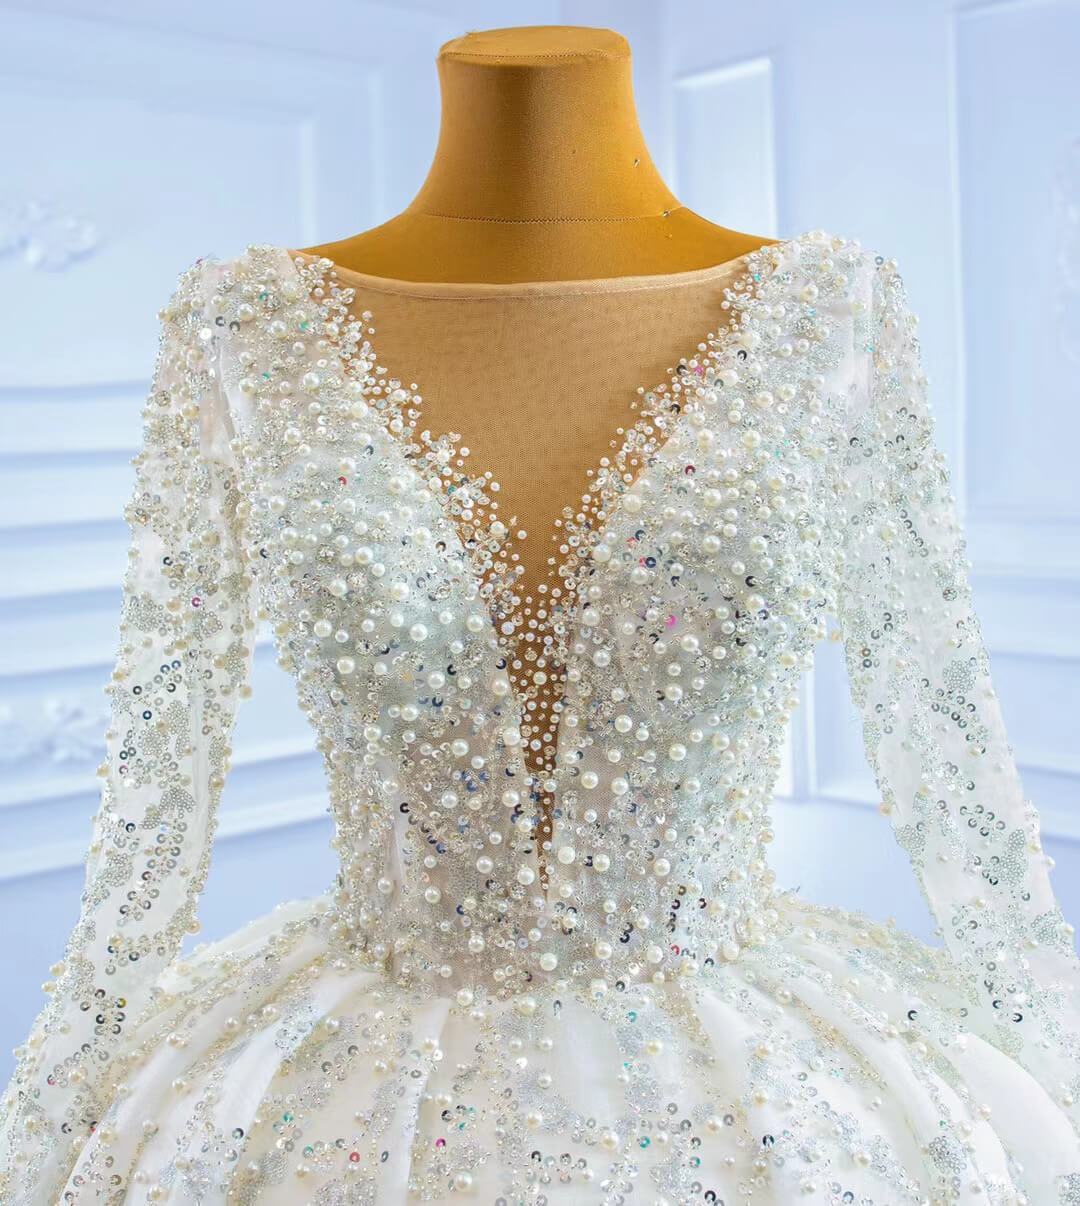 Luxury Beaded Wedding Dresses Long Sleeve Ball Gown 67260-wedding dresses-Viniodress-Viniodress